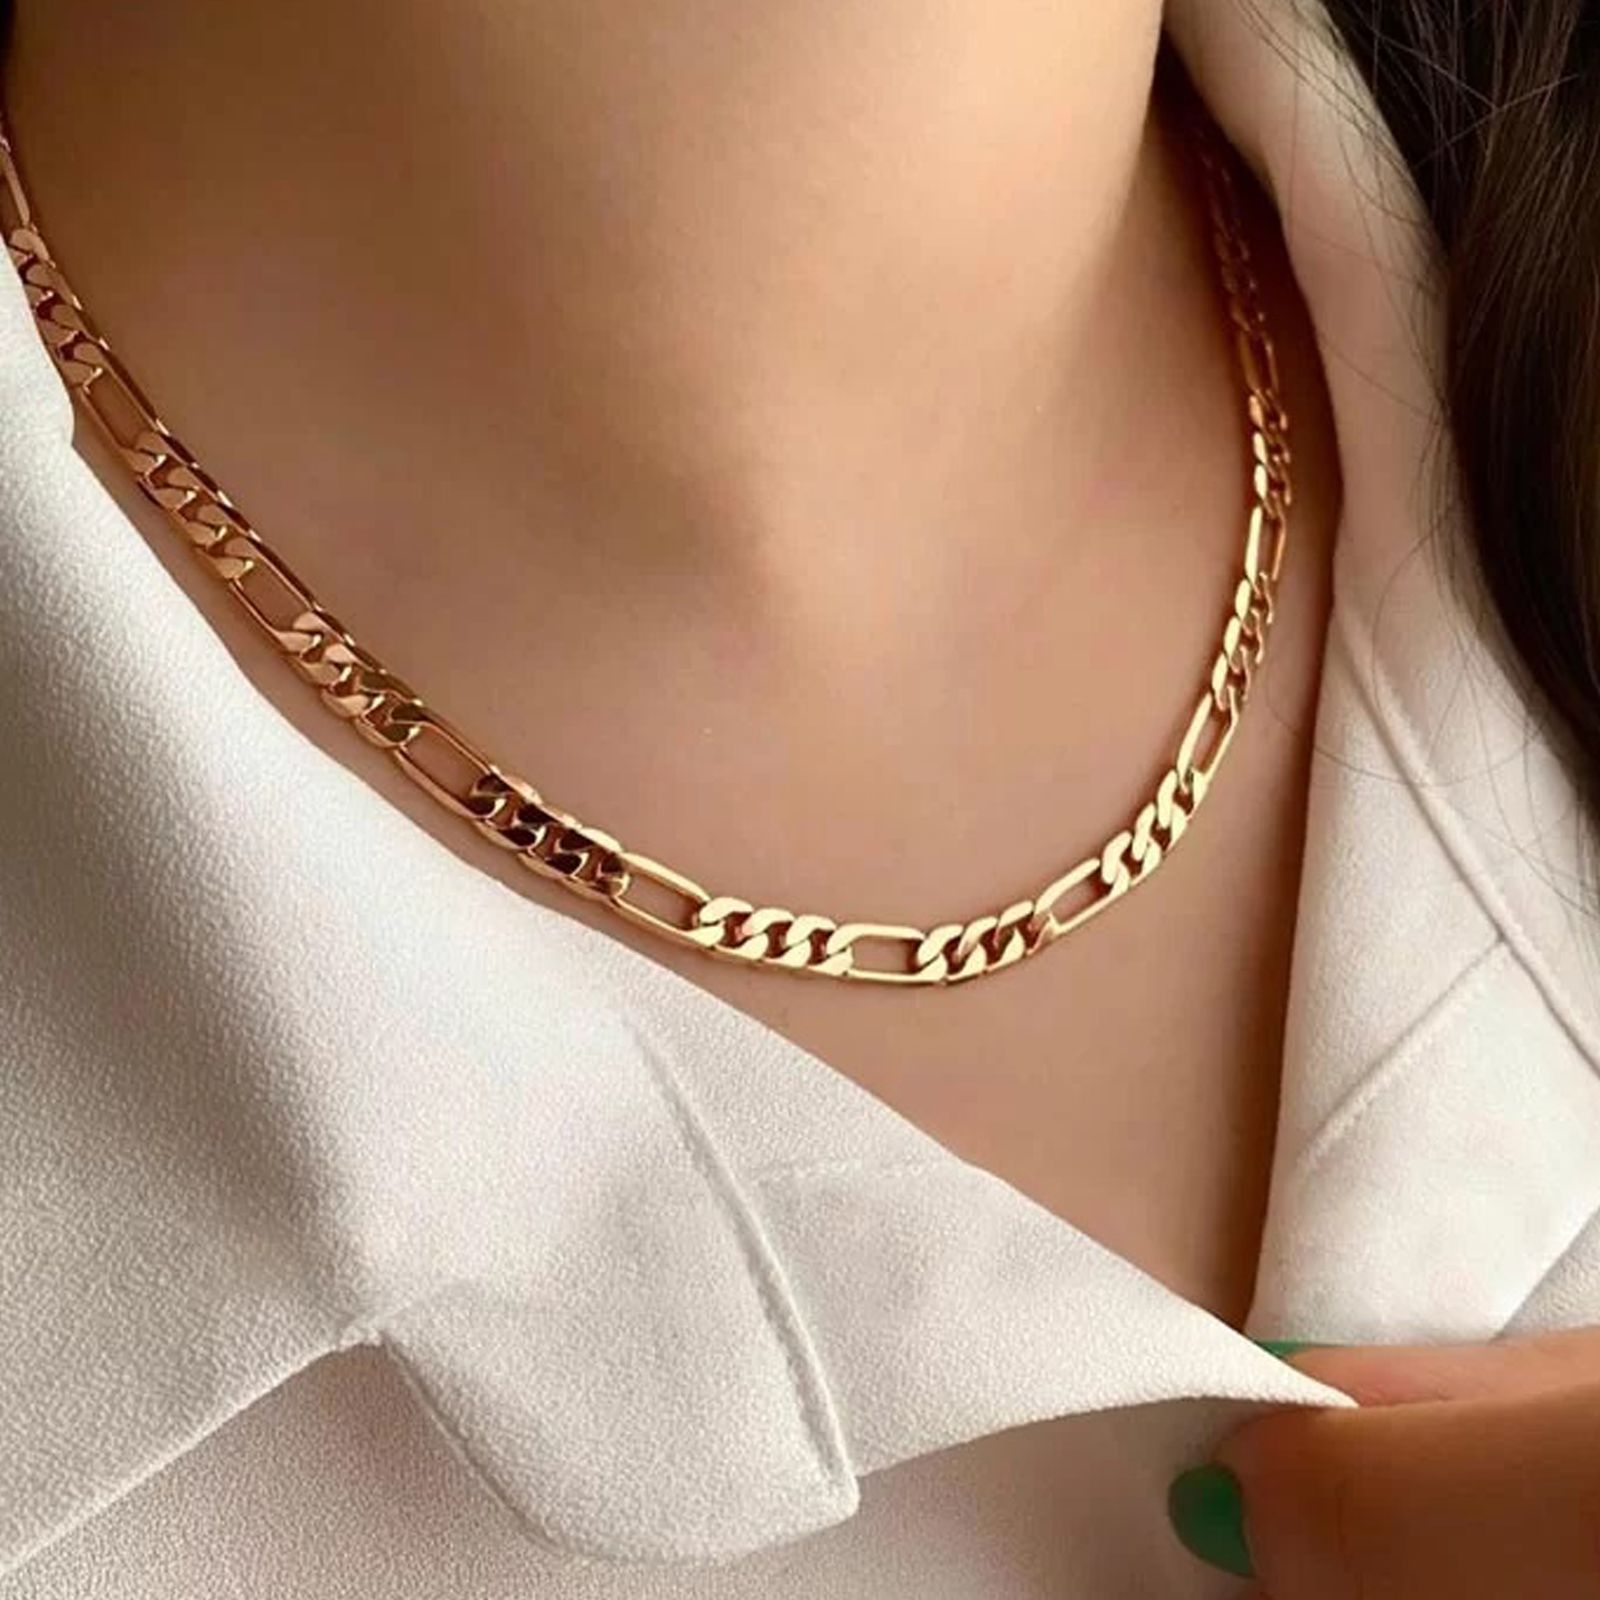 زنجیر طلا 18 عیار زنانه جواهری سون مدل 4264 -  - 2